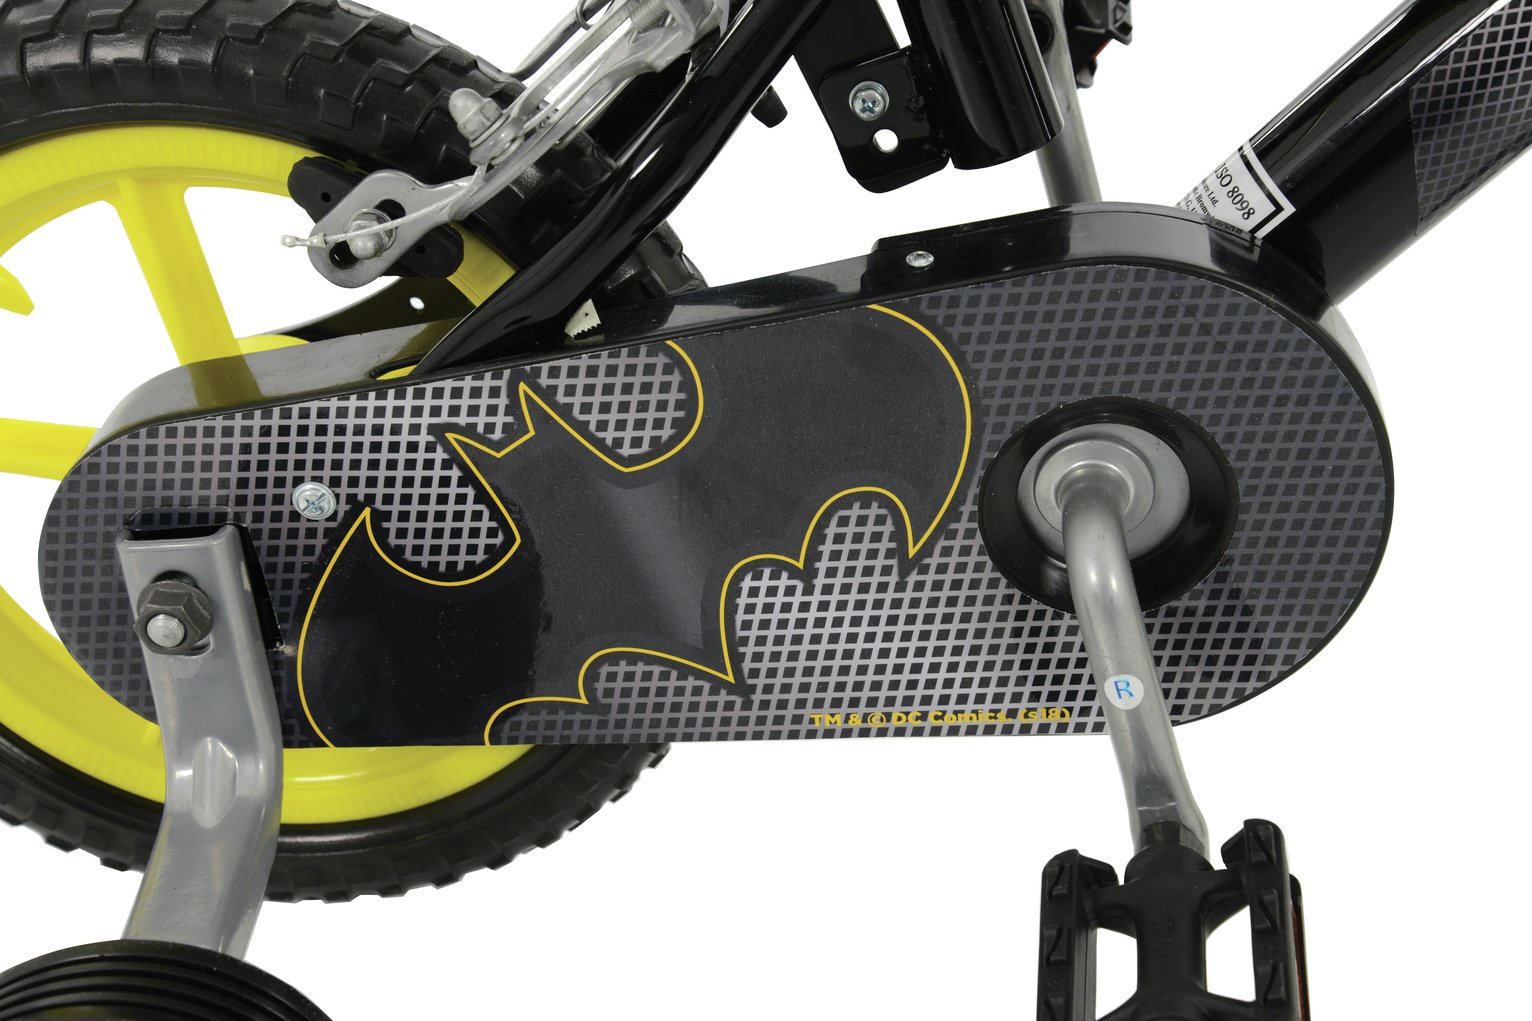 batman bike 18 inch